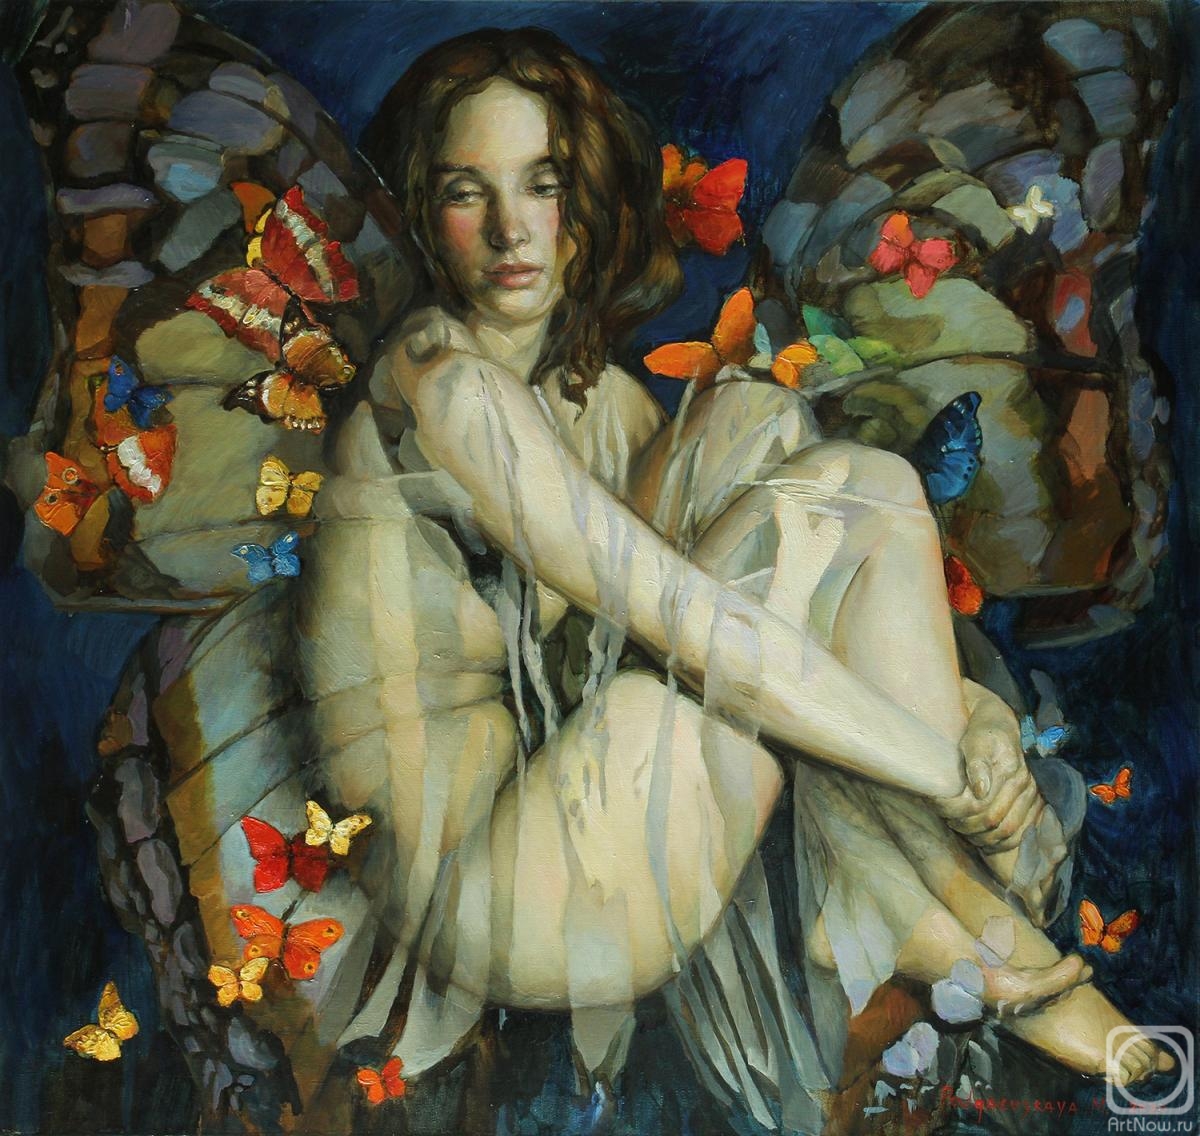 Podgaevskaya Marina. Butterfly # 8